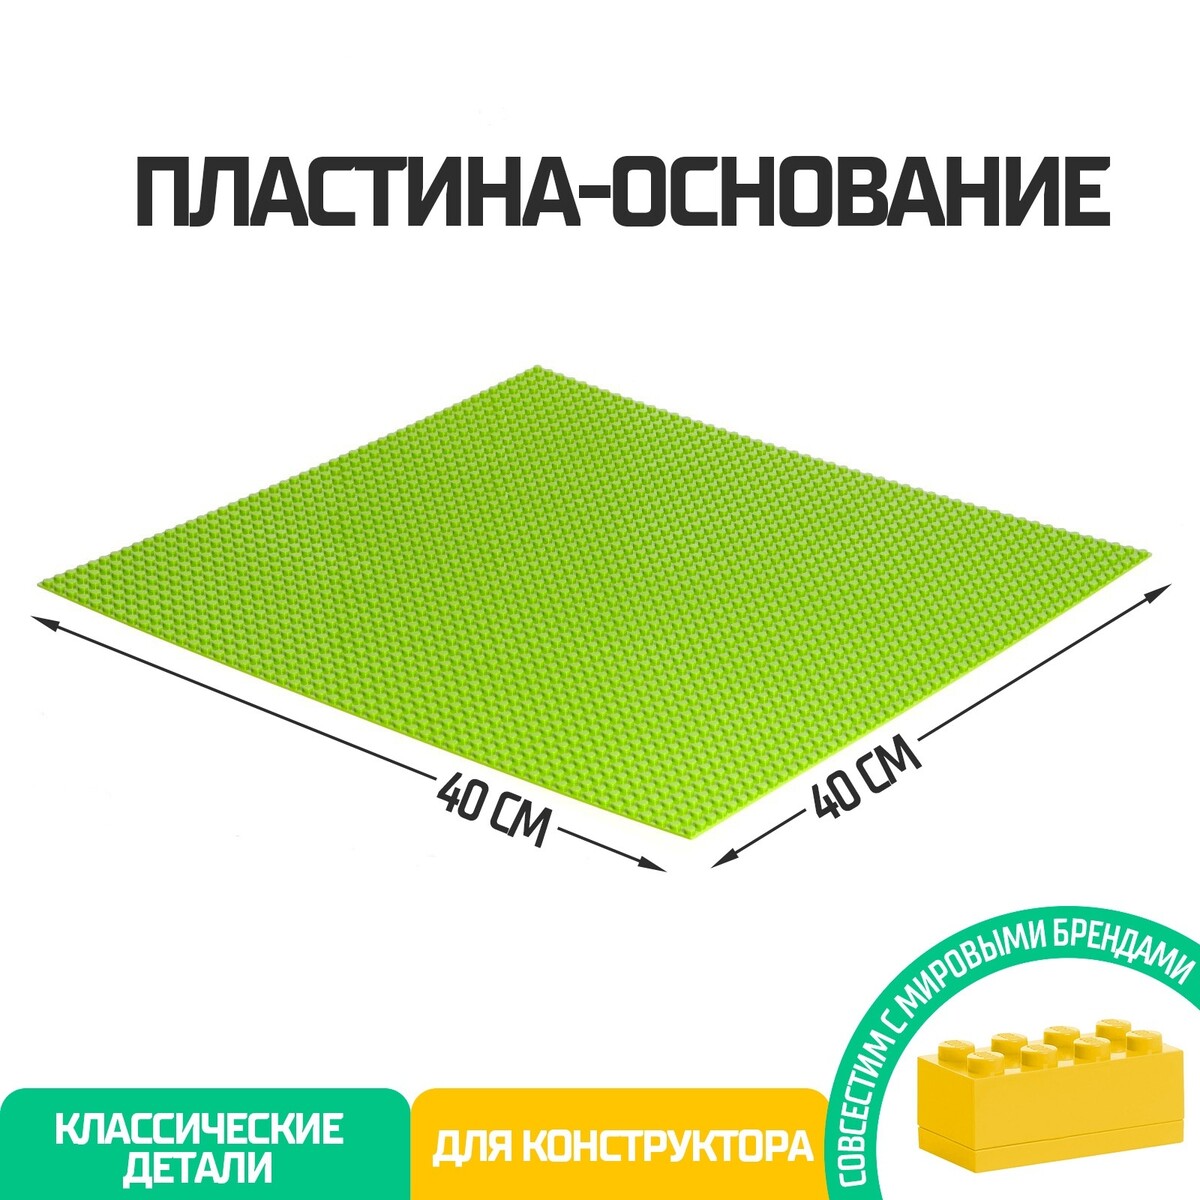 Пластина-основание для конструктора, 40 × 40 см, цвет салатовый пластина основание для конструктора 25 5 х 12 5 см зеленый